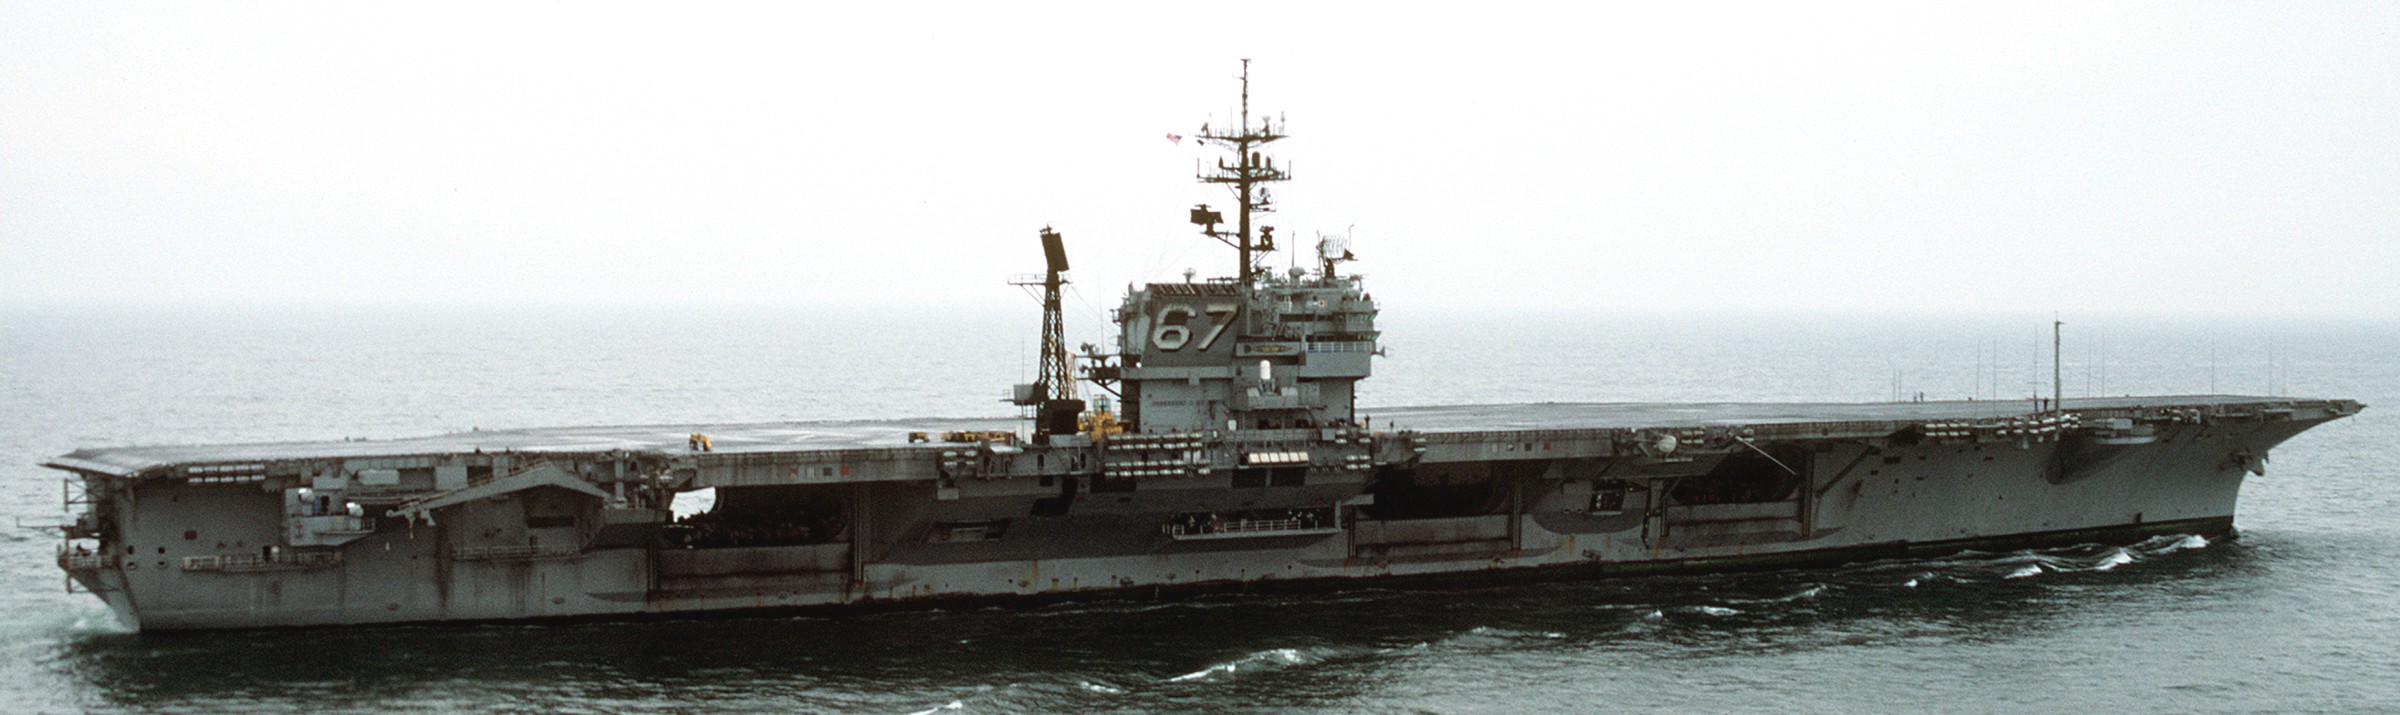 cv-67 uss john f. kennedy aircraft carrier us navy 38